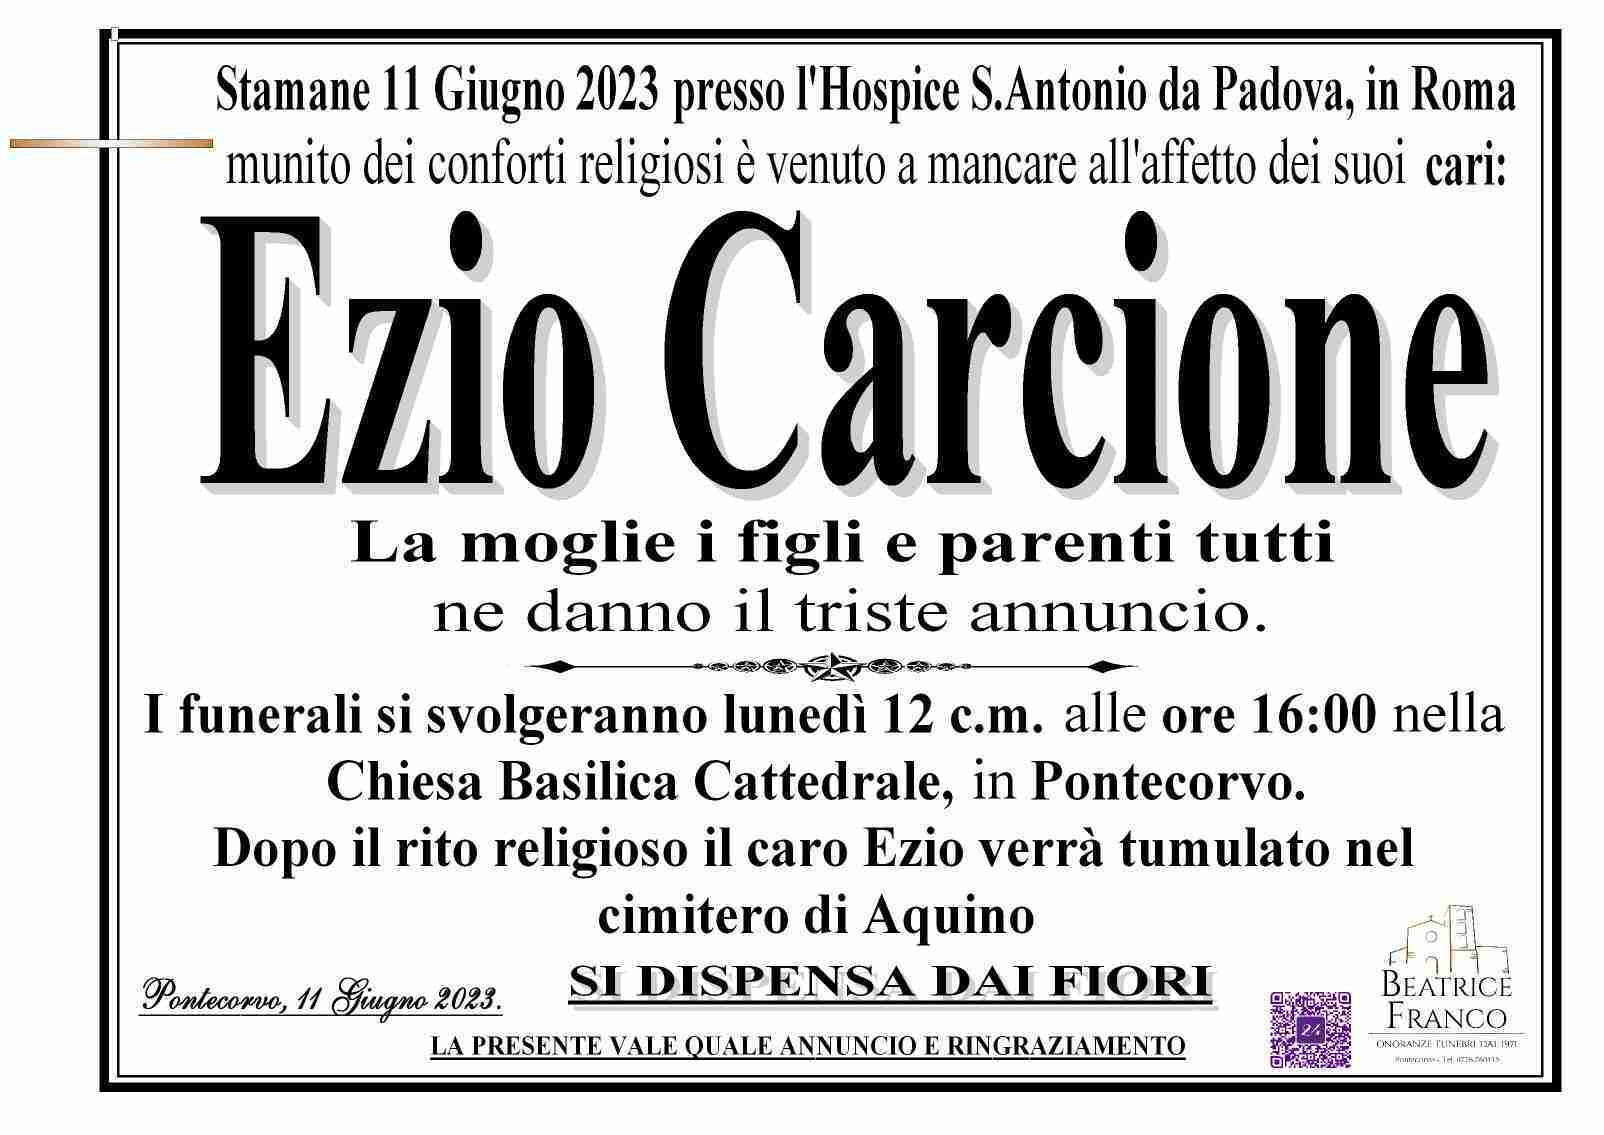 Ezio Carcione